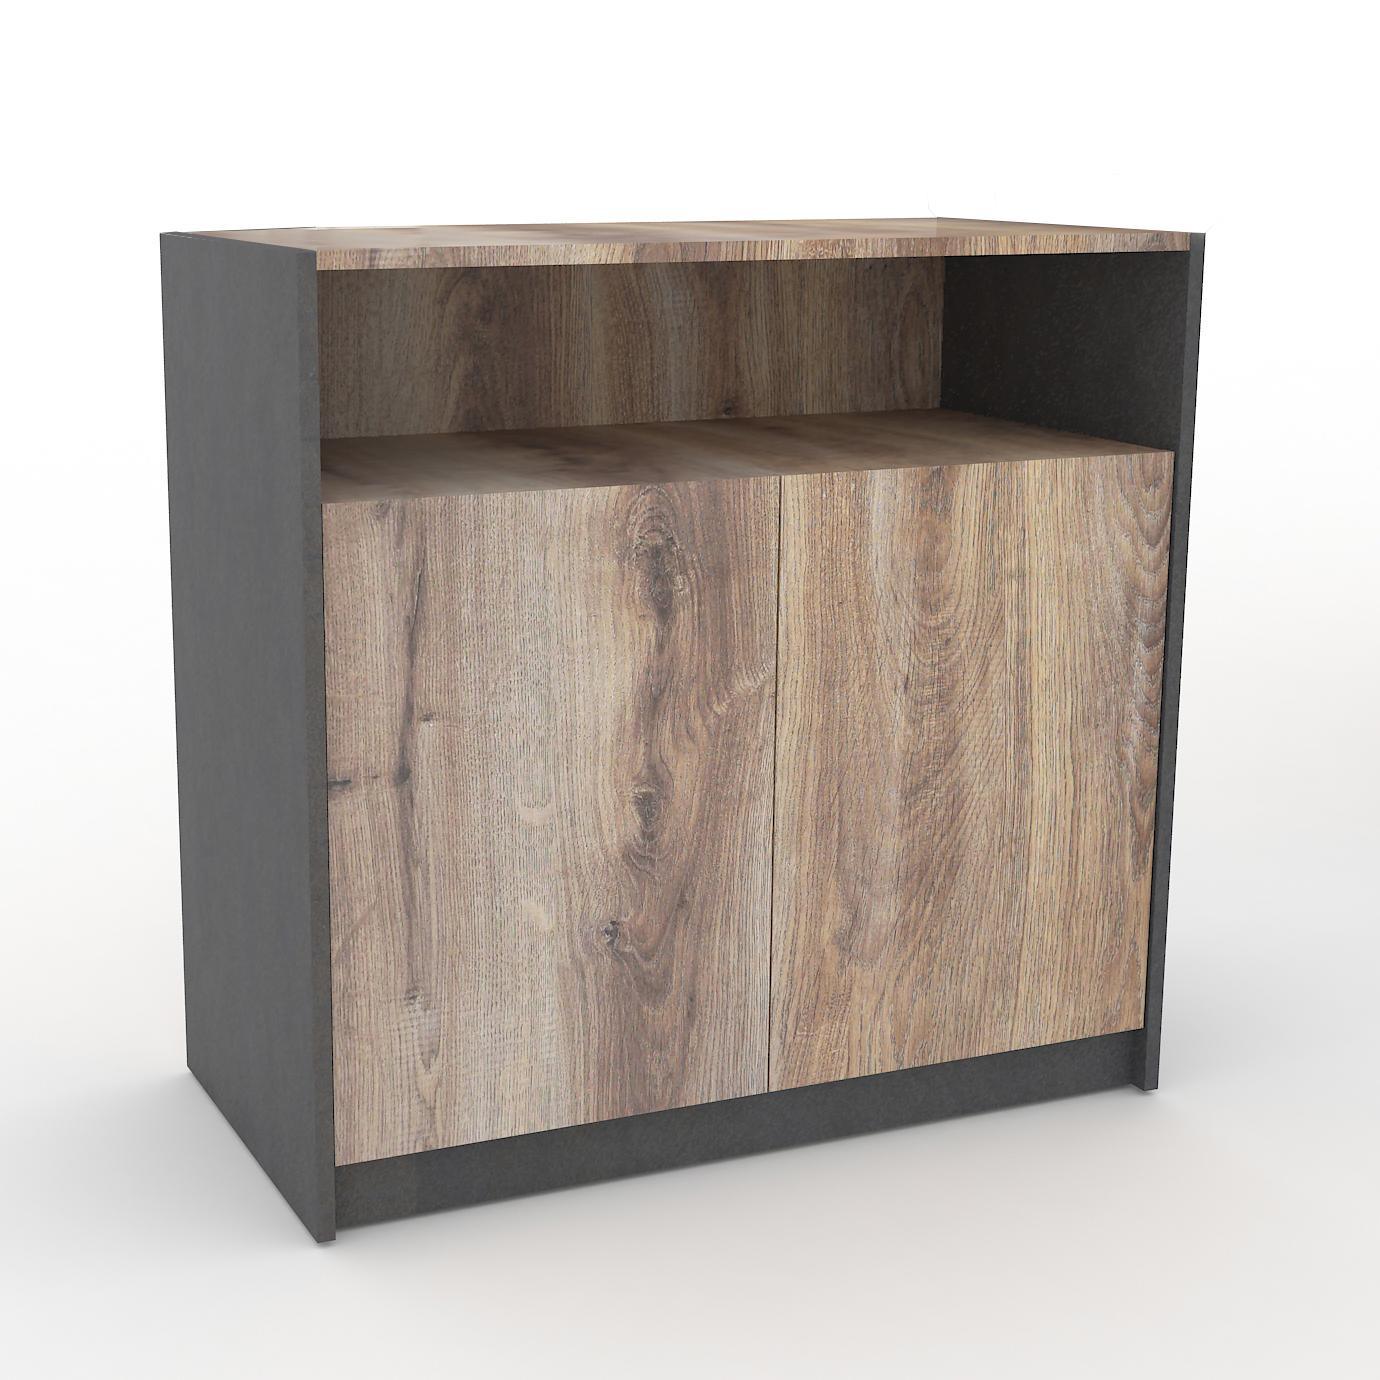 Arto Credenza Cabinet Small 80cm - Warm Oak & Black - Furniture Castle